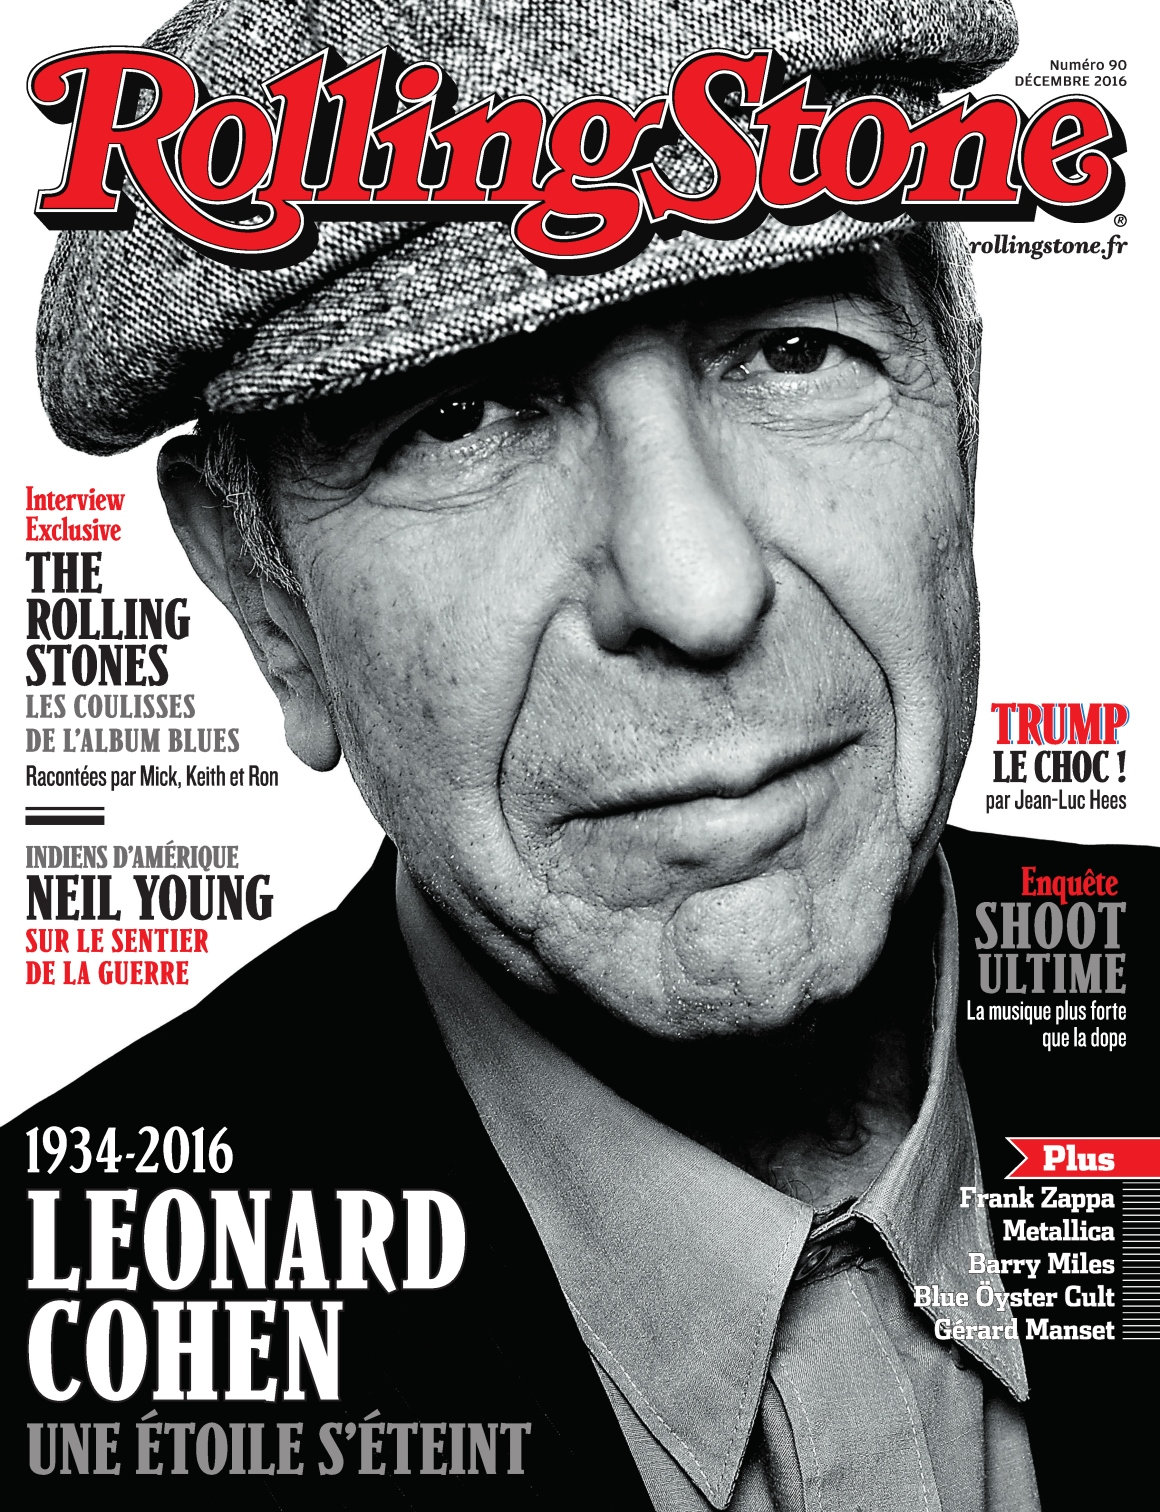 Rolling Stone N°90 - Décembre 2016 